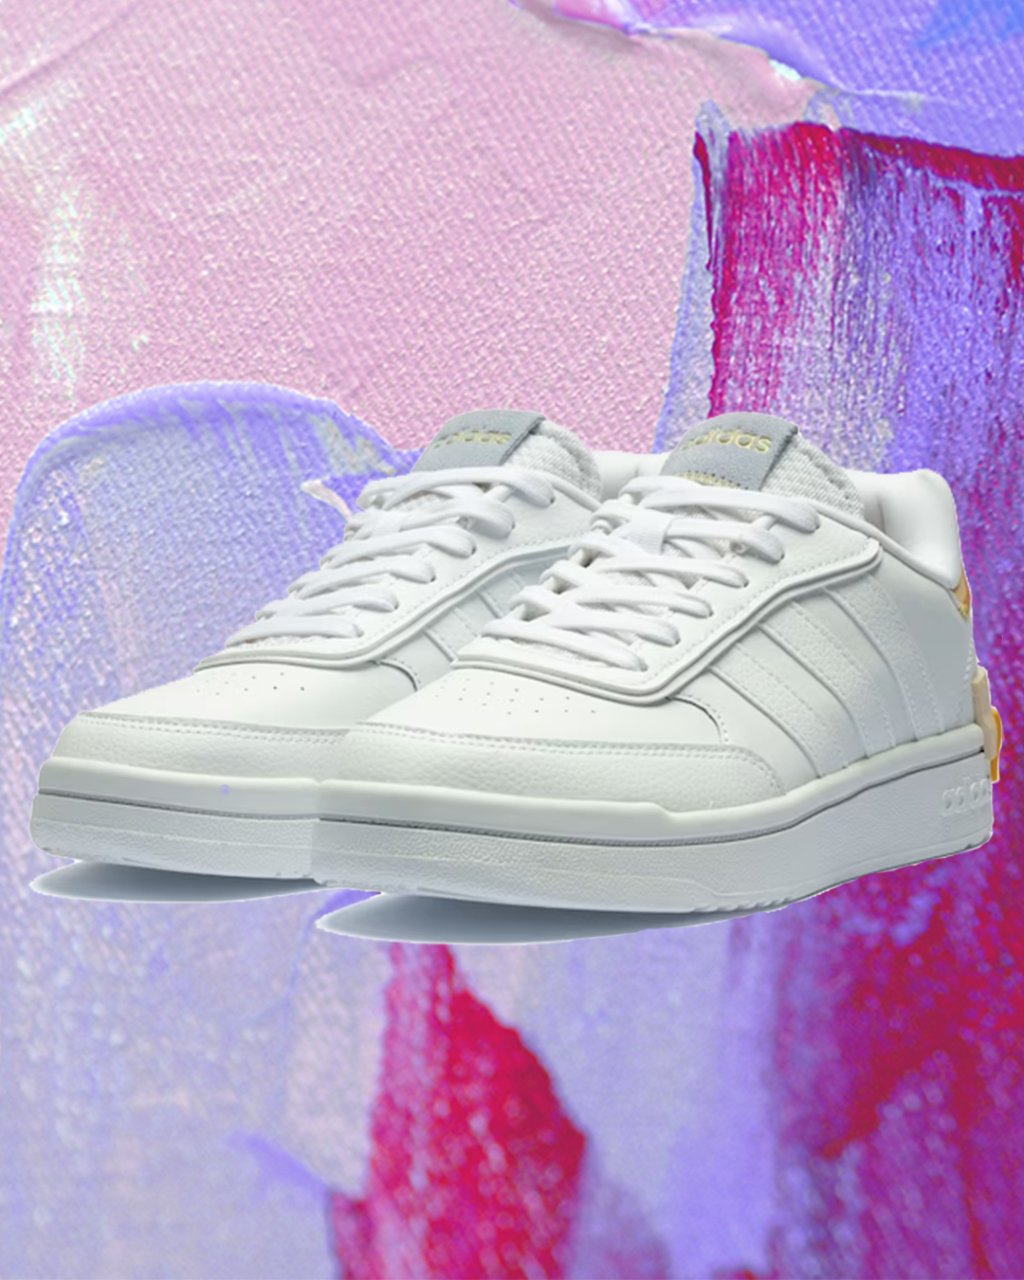 Montagem em fundo lilás e roxo com tênis branco da Adidas